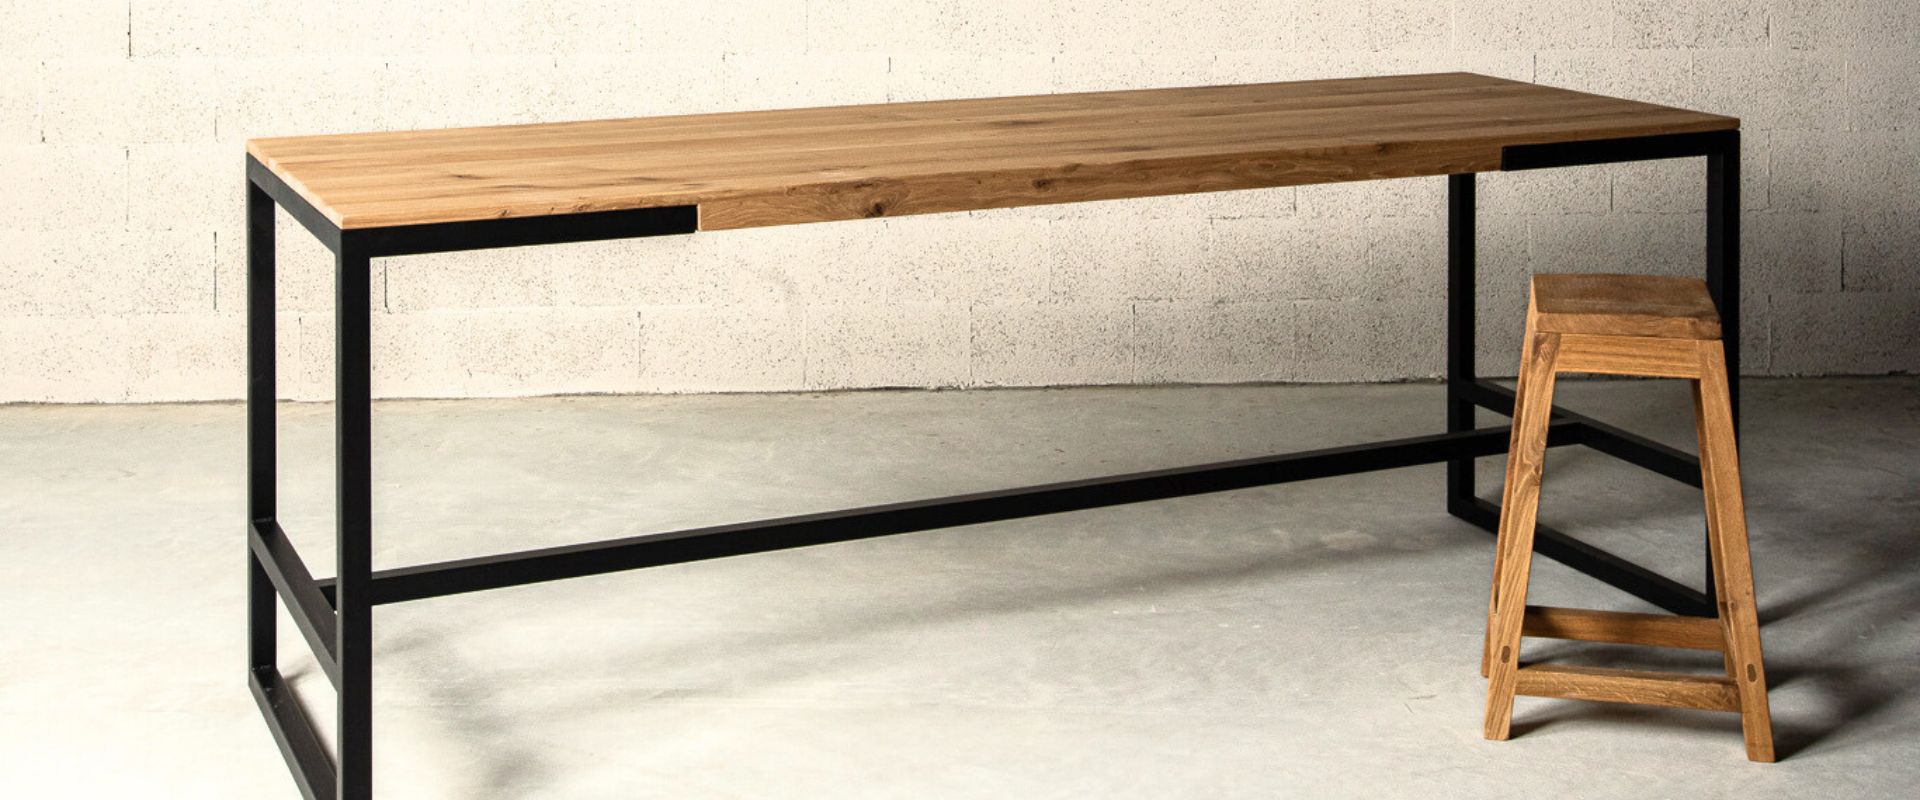 שולחן בר בשילוב ברזל ועץ מלא